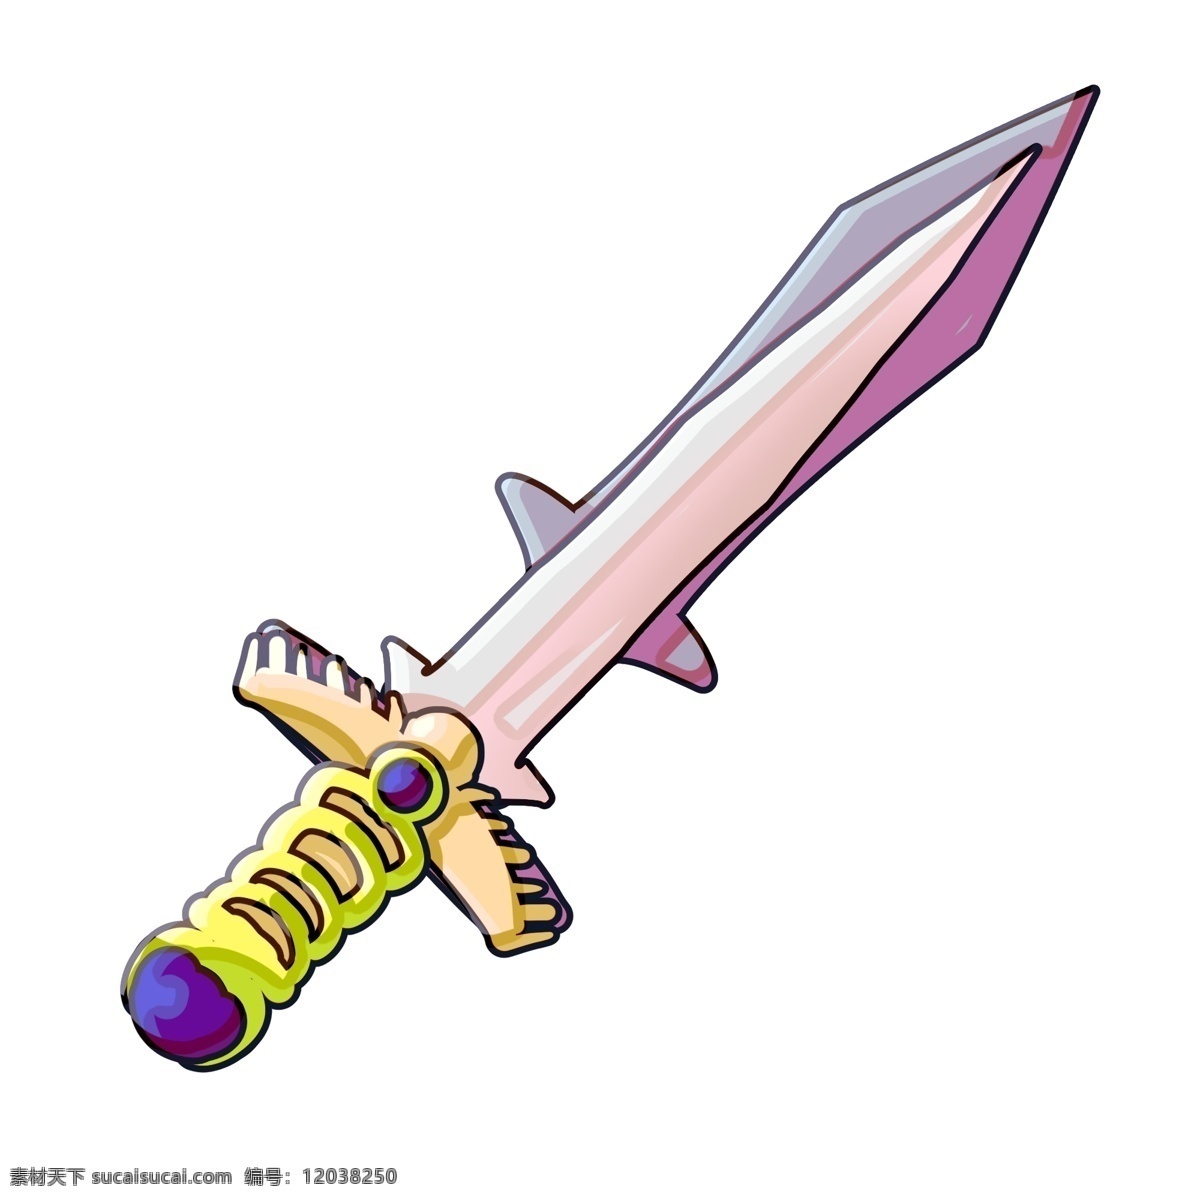 立体 宝剑 装饰 插画 黄色的宝剑 立体宝剑 漂亮的宝剑 创意宝剑 锋利的宝剑 古风宝剑 宝剑插画